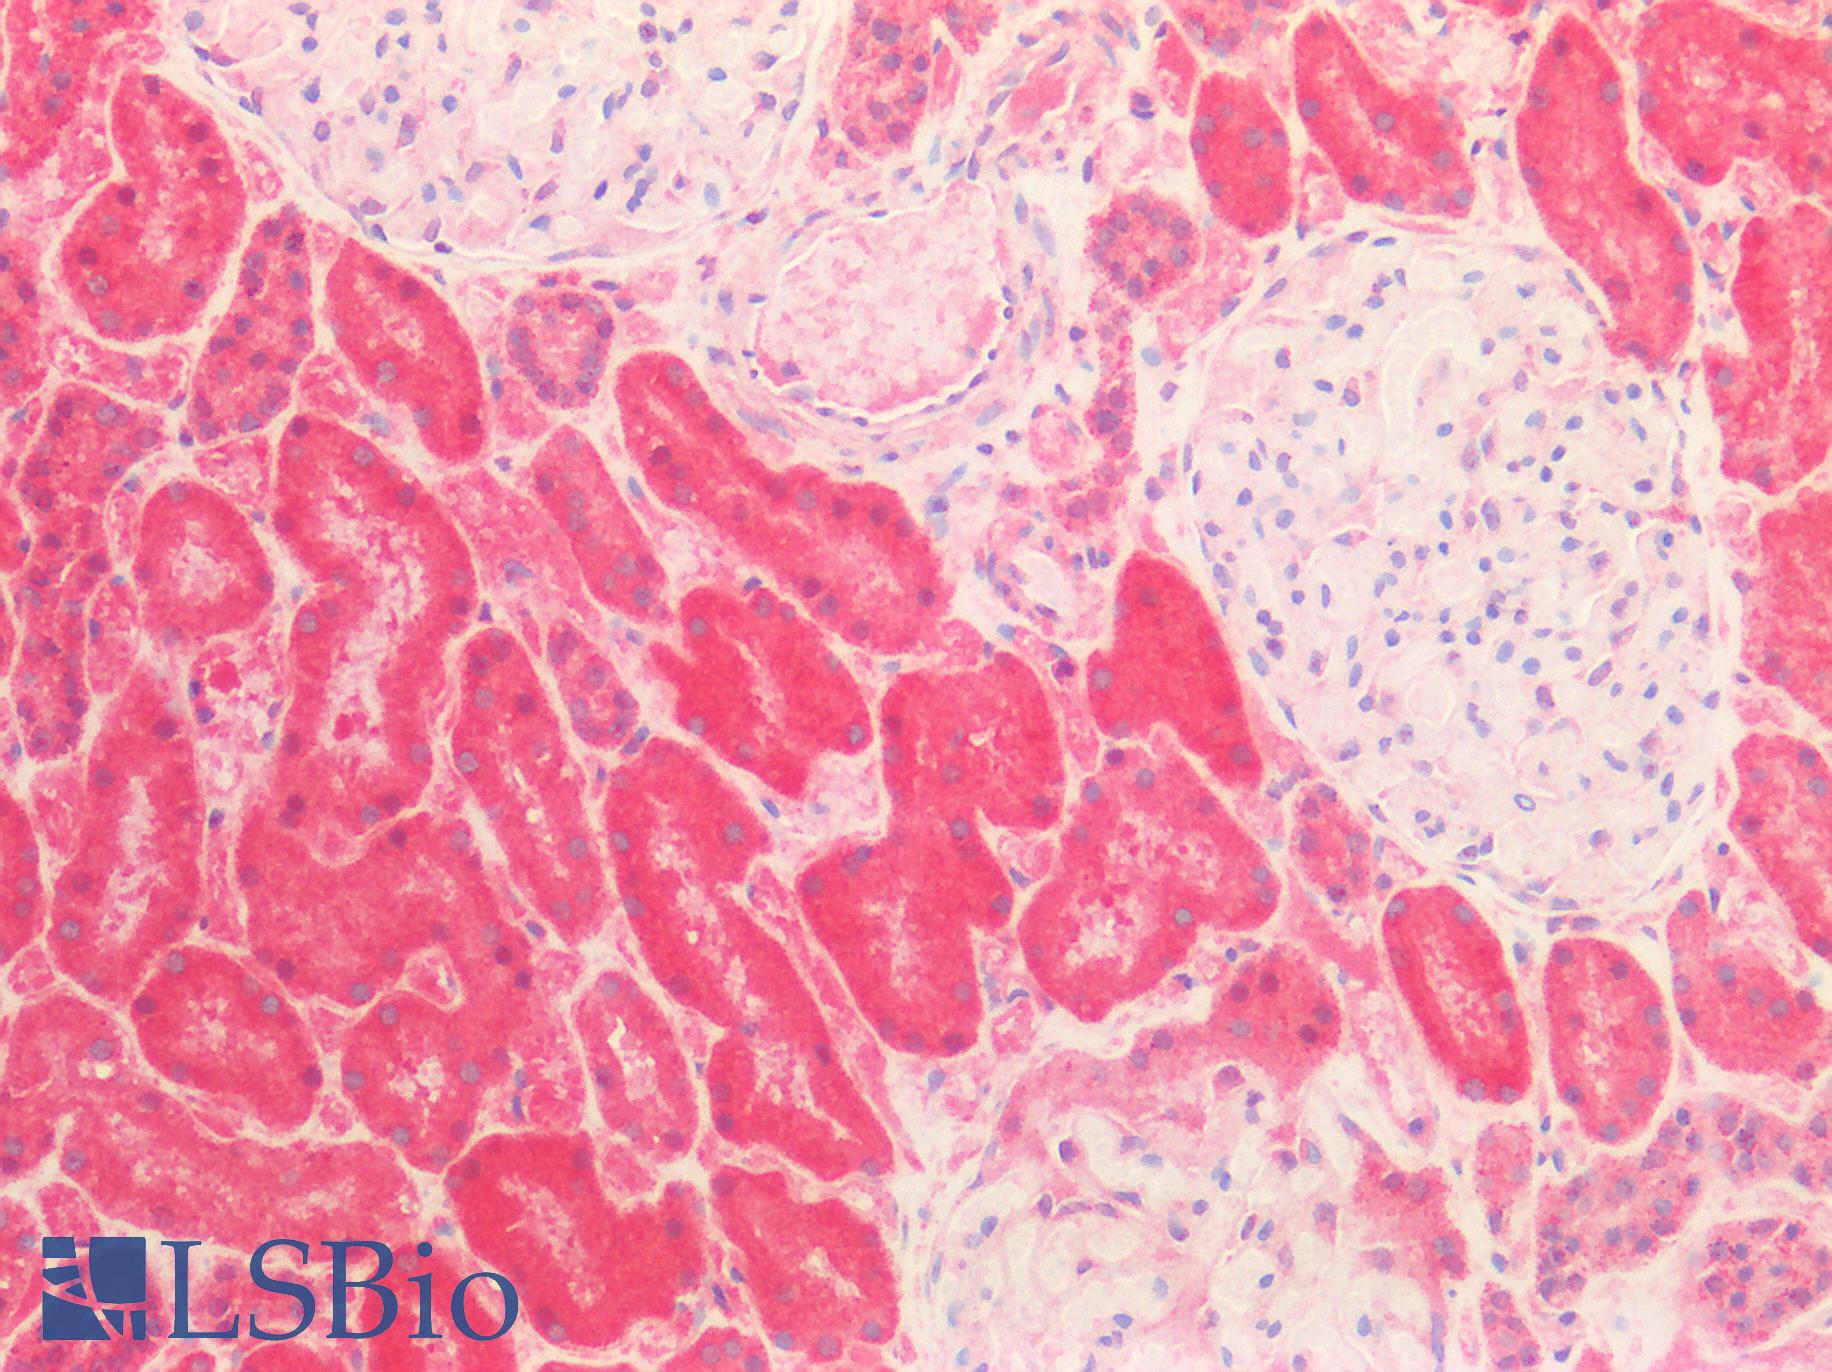 HSPA9 / Mortalin / GRP75 Antibody - Human Kidney: Formalin-Fixed, Paraffin-Embedded (FFPE)